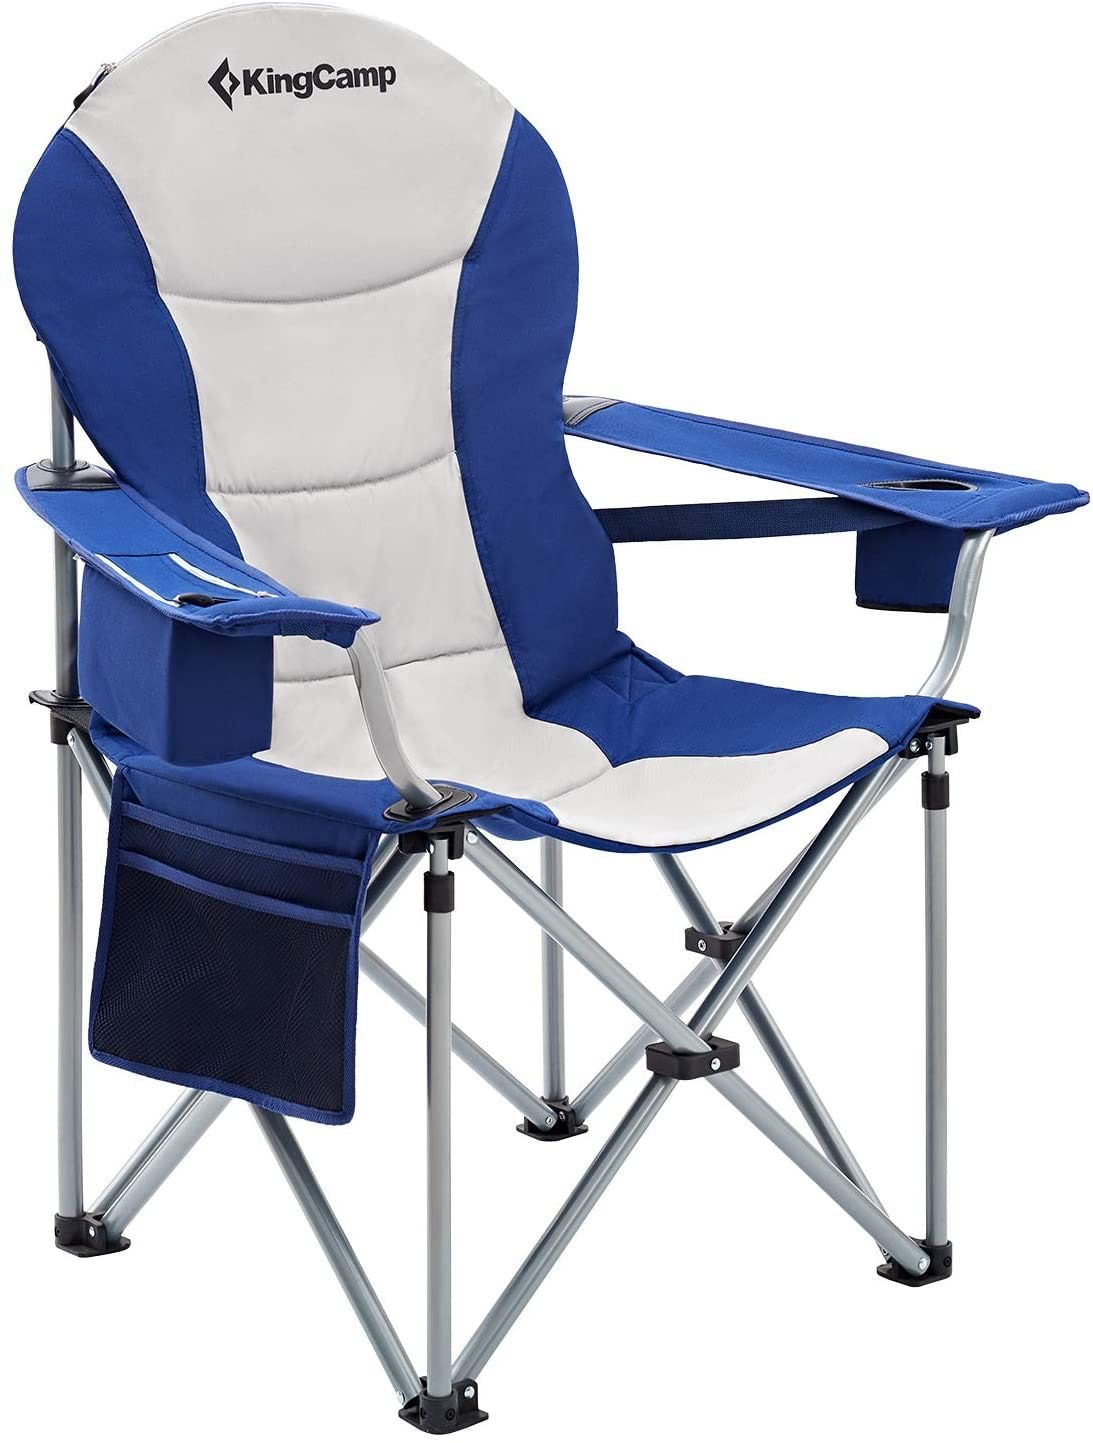 4 najbolje stolice za kampiranje za loša leđa, prema ortopedu